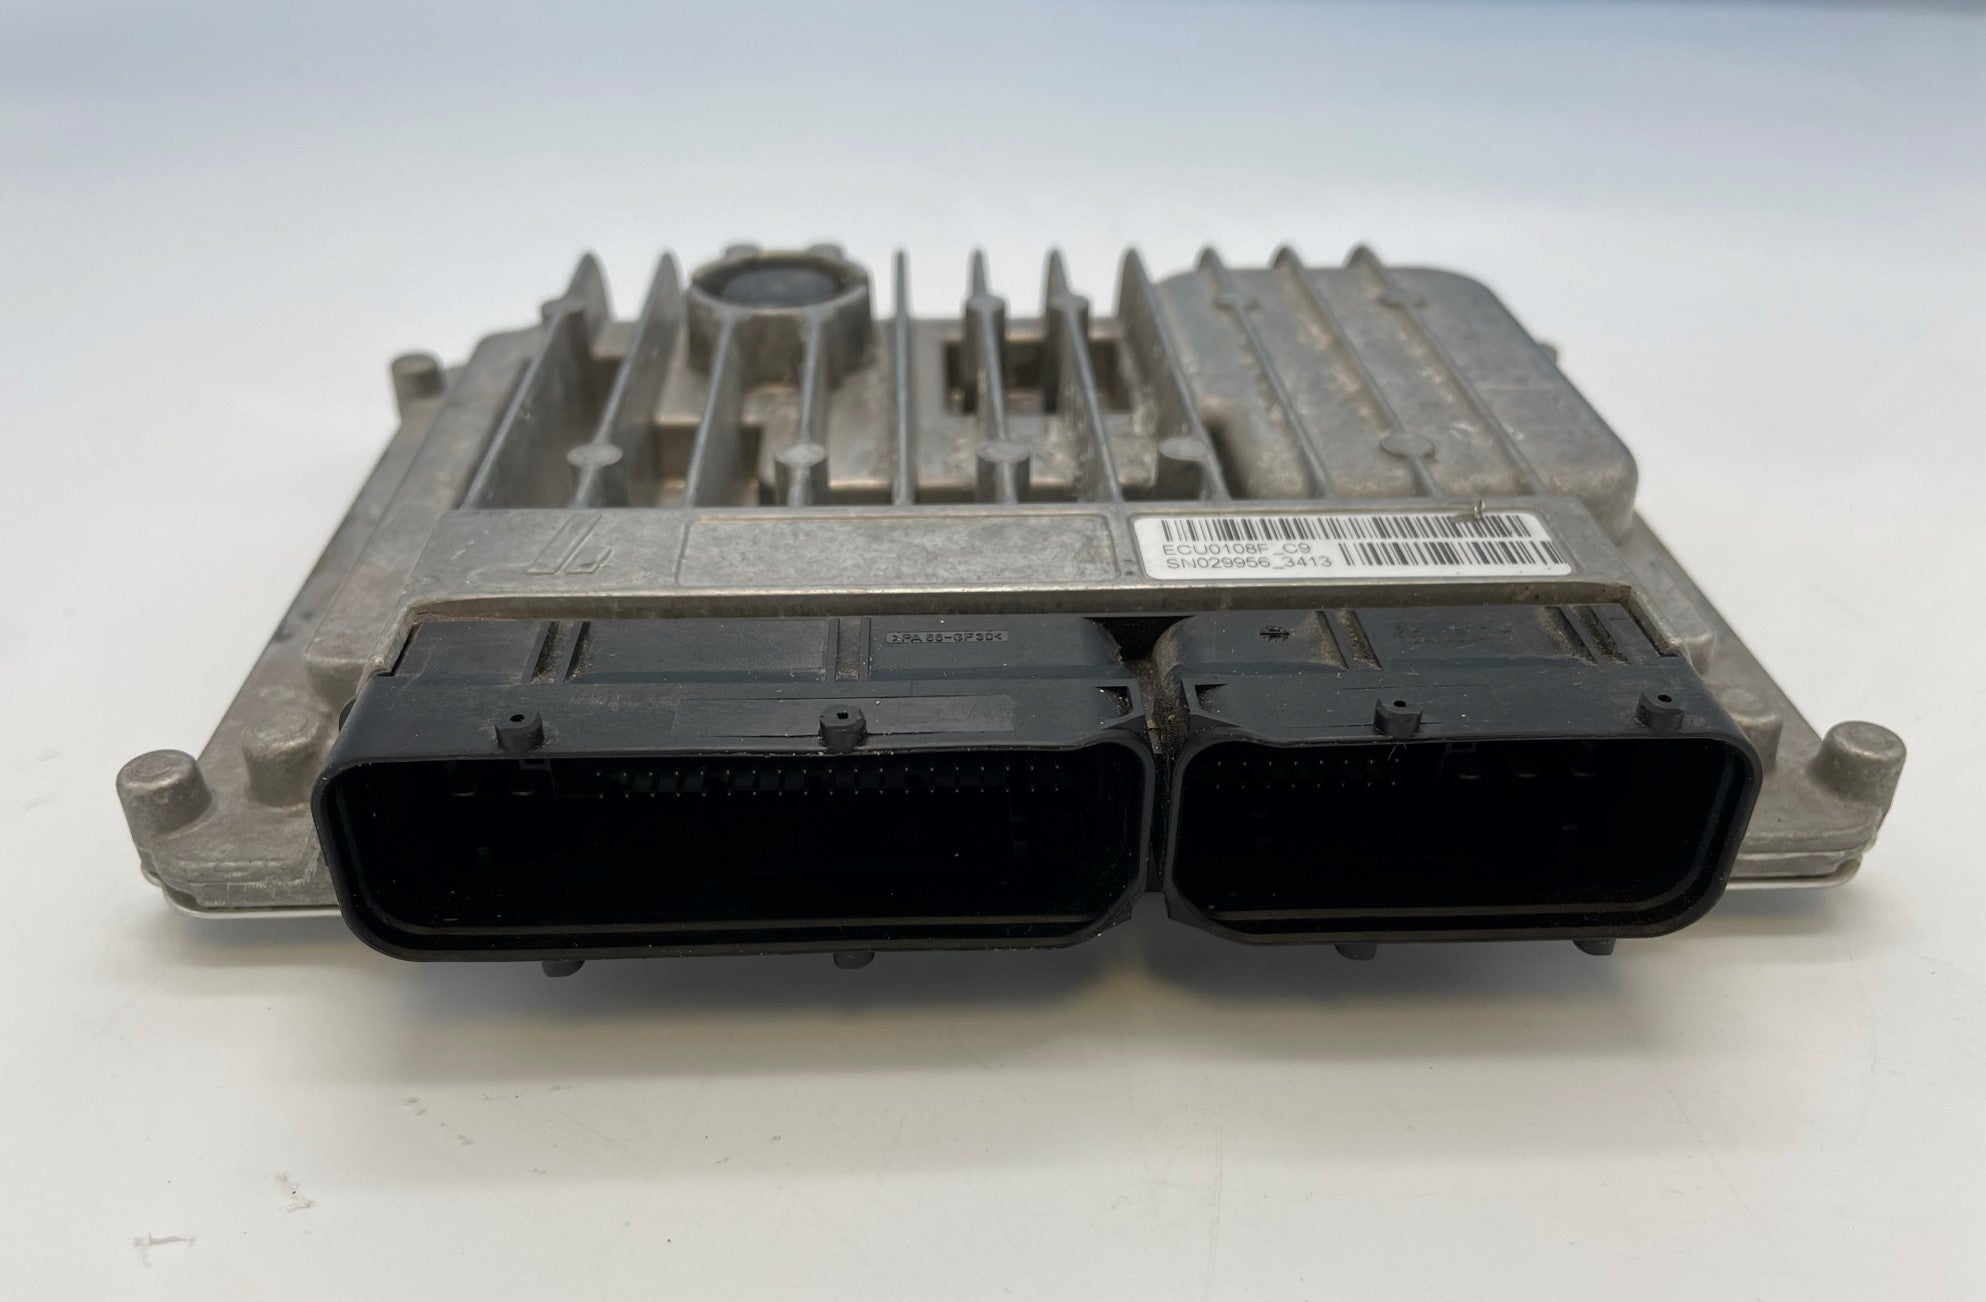 Ferrari - Gearbox Transmission Control Module DCT ECU - Part No. 258974